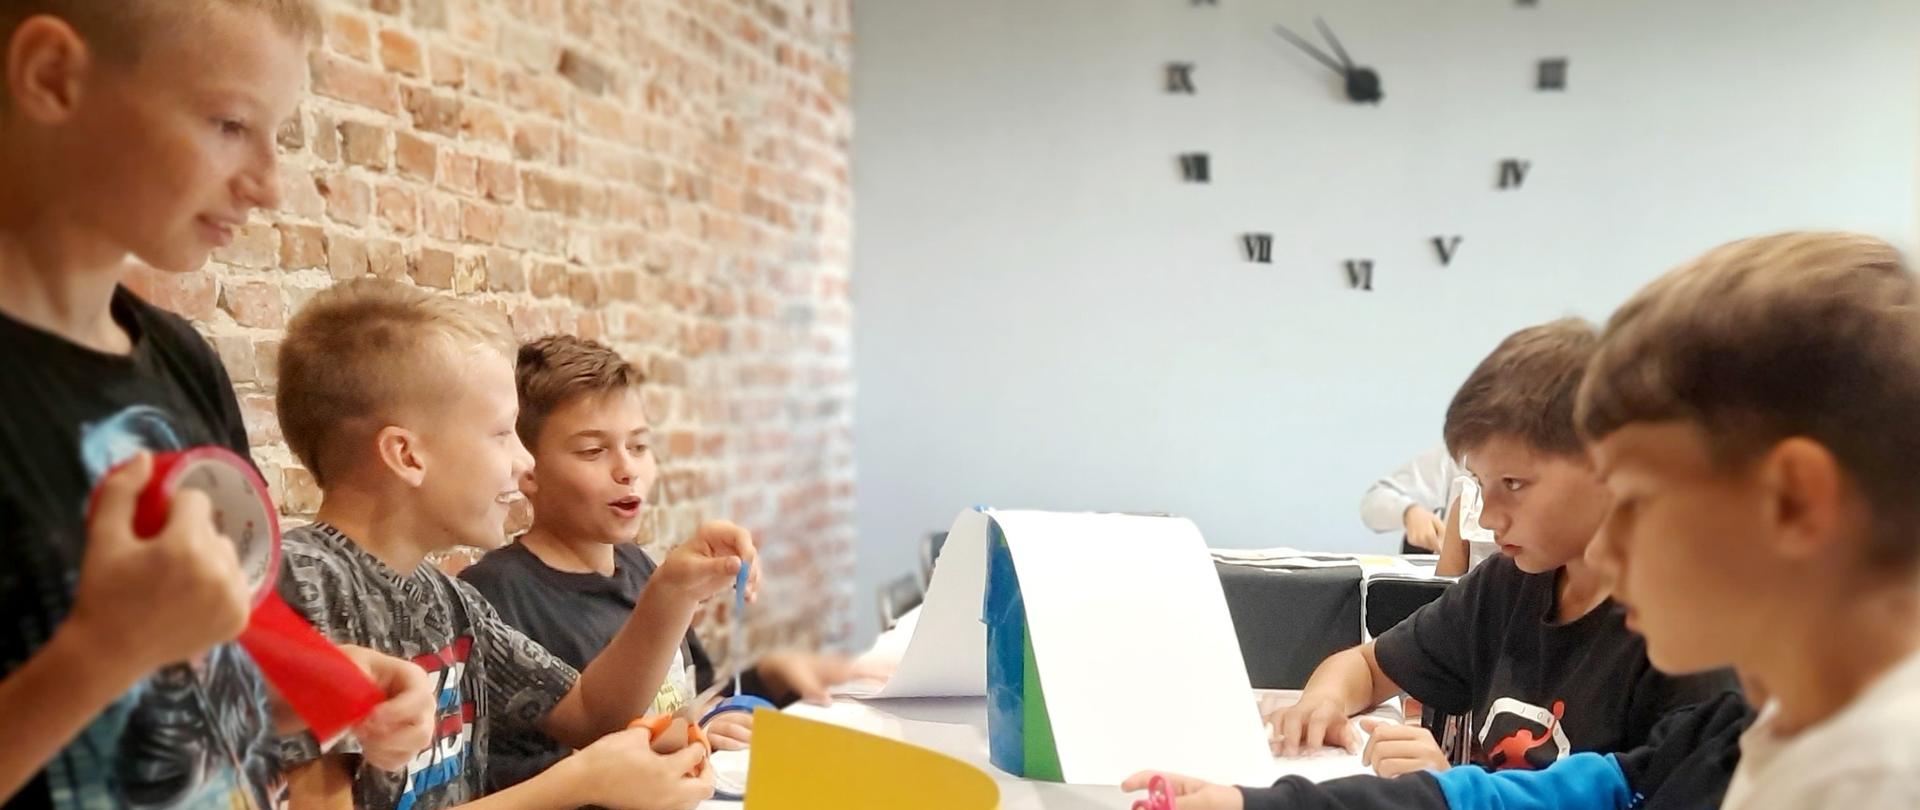 Pięciu chłopców w wieku około 10 lat przy stole w pracowni artystycznej tworzą pracę przestrzenną. W tle biała ściana, a na niej zegar.